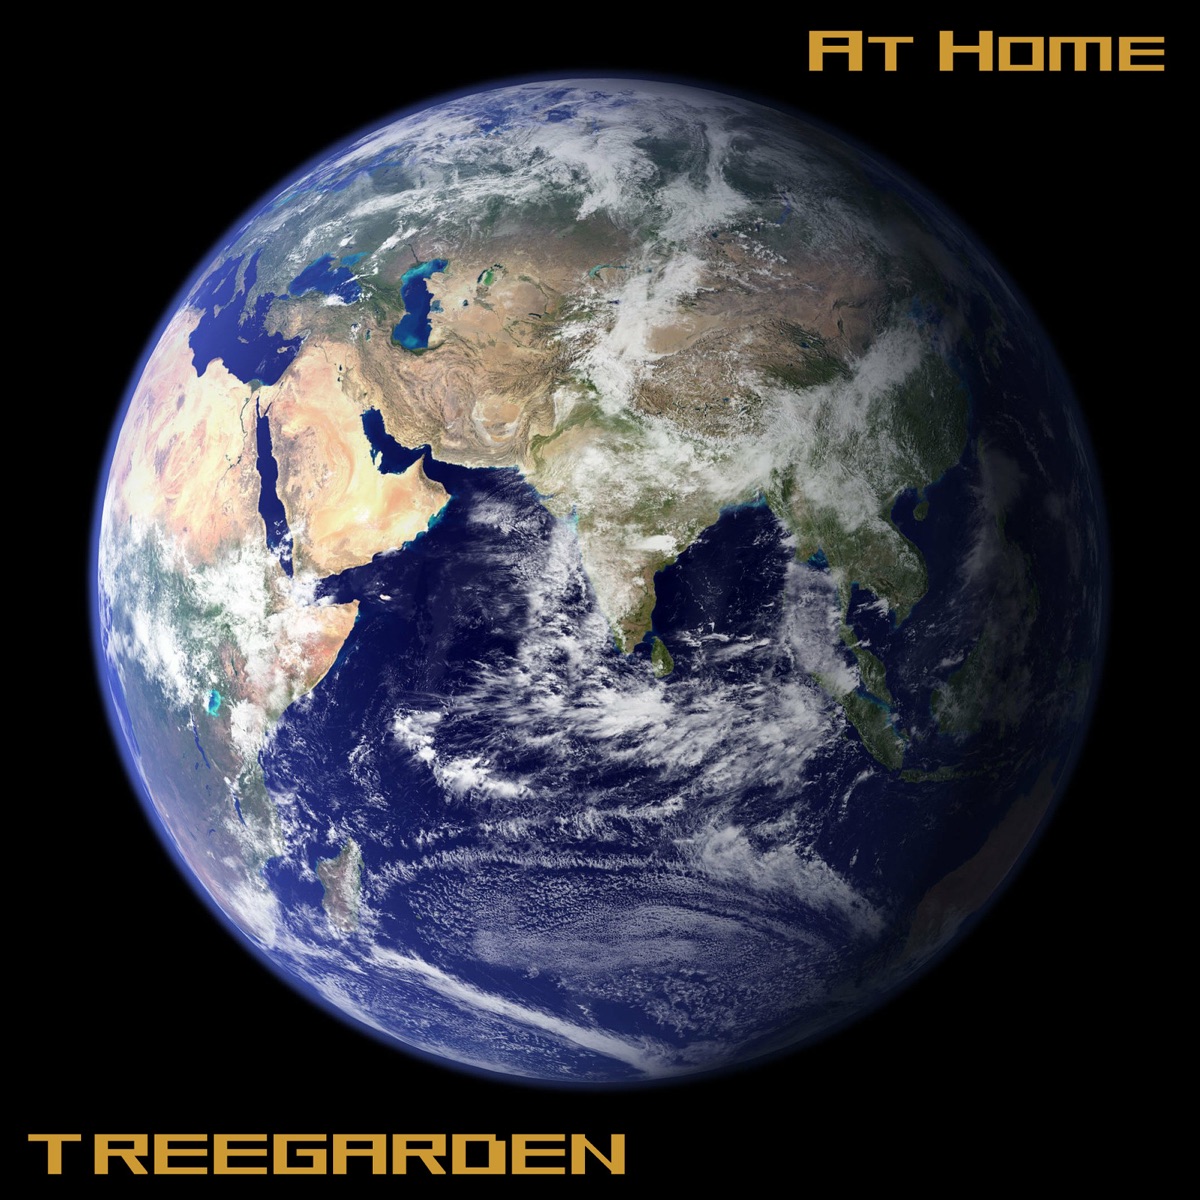 HighTekk - Single by Treegarden on Apple Music